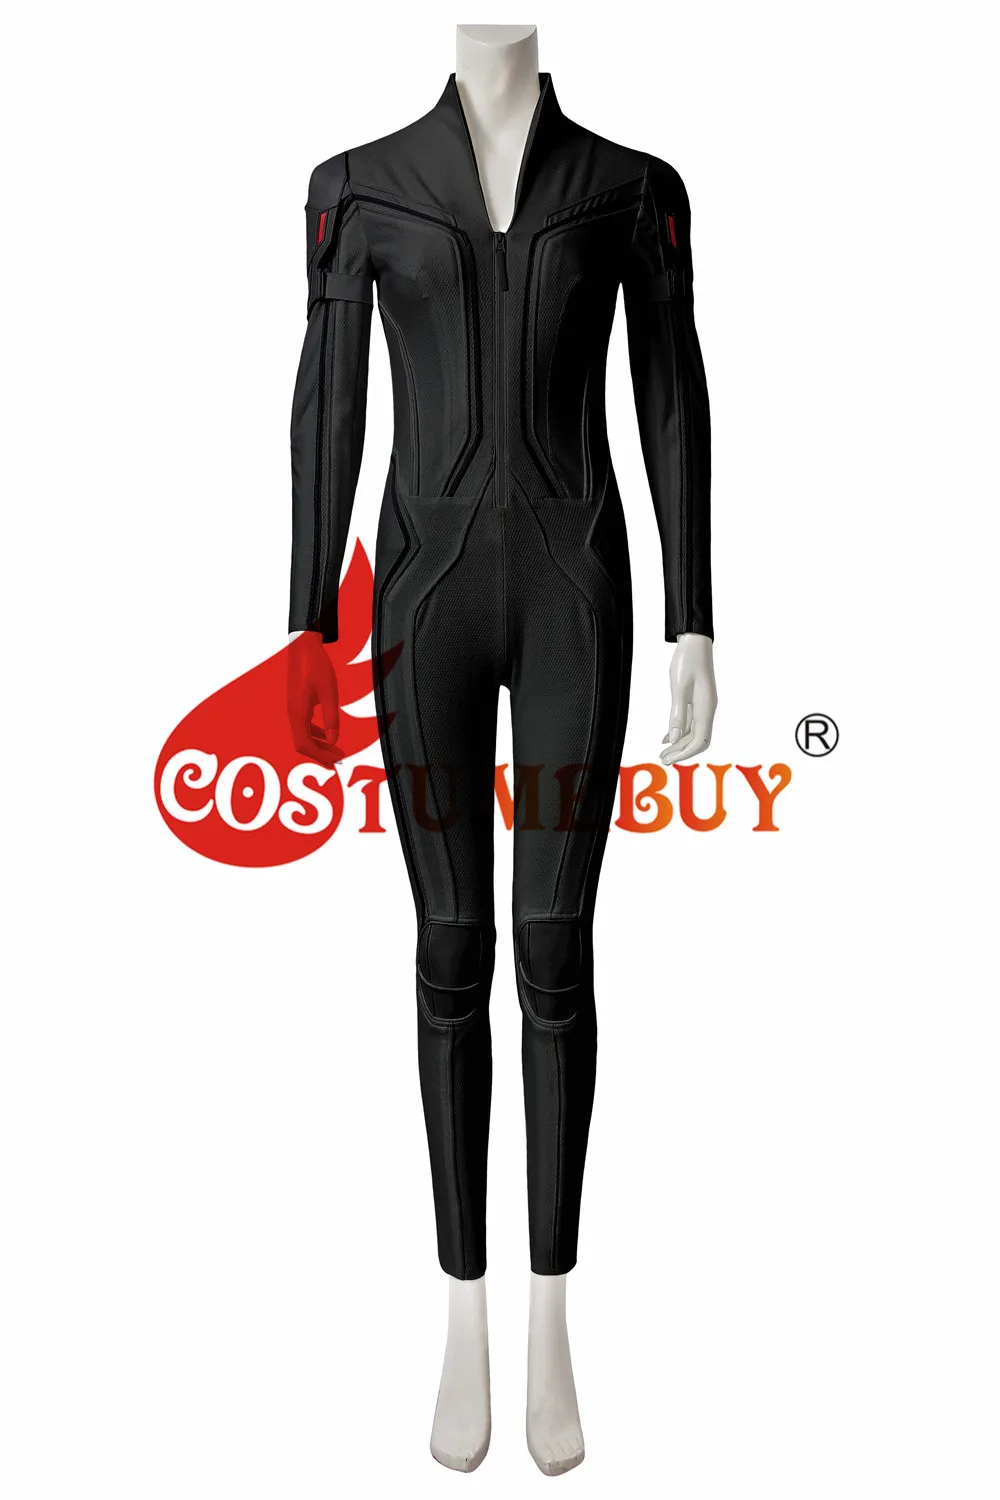 CostumeBuy, черный костюм Наташи ромаофф, черный костюм для взрослых, Женский костюм супергероя, черная вдова, сексуальный комбинезон, костюм L920